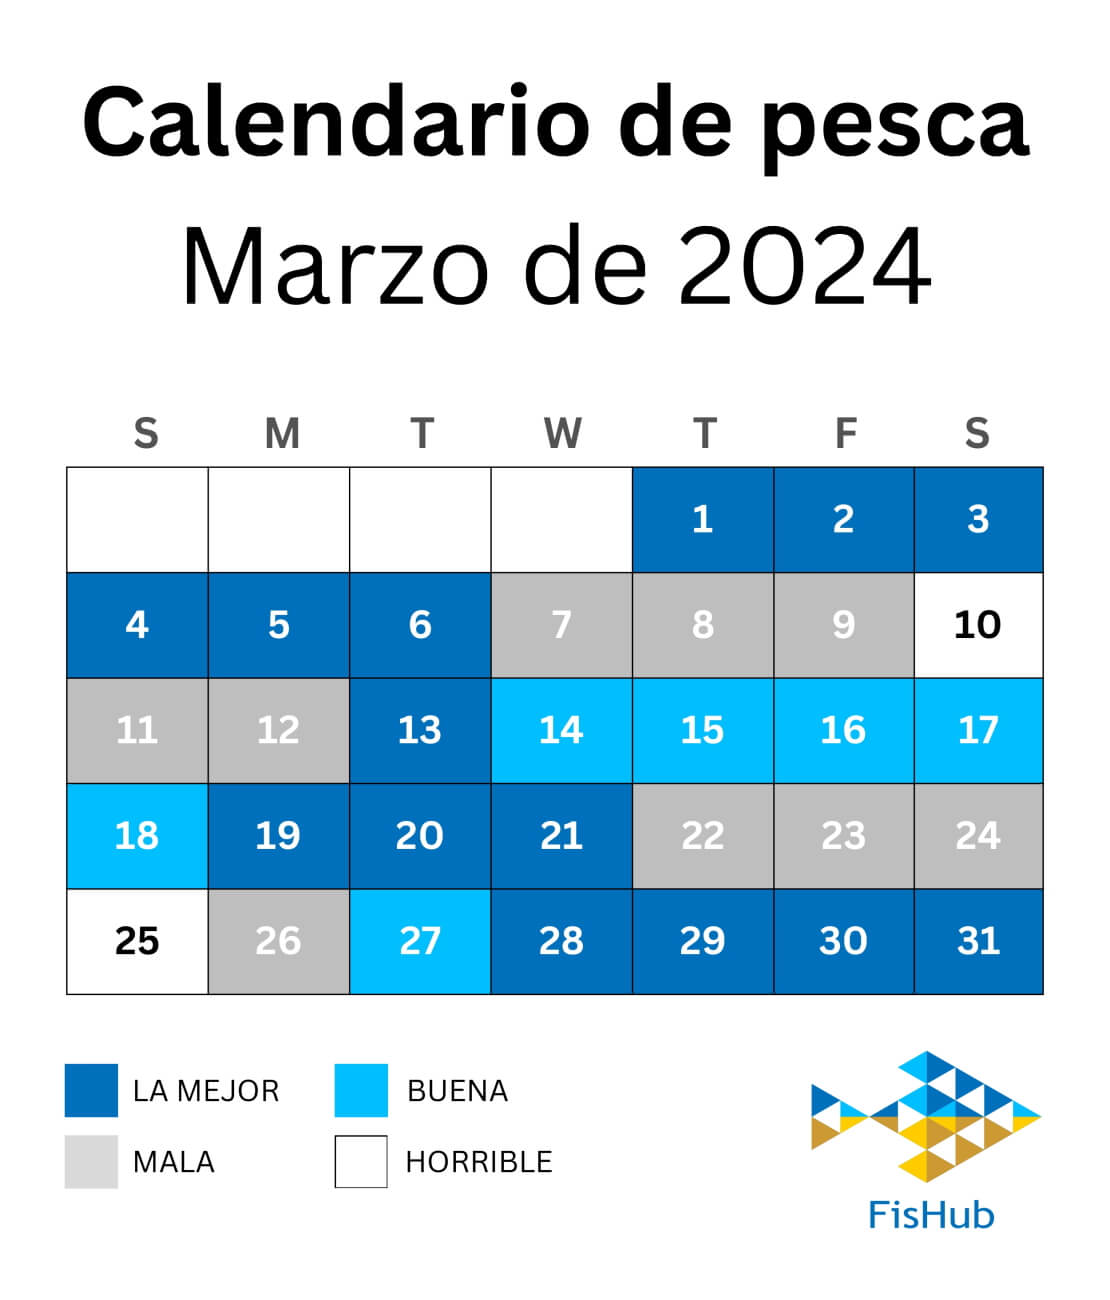 Calendario de pescadores para marzo de 2024